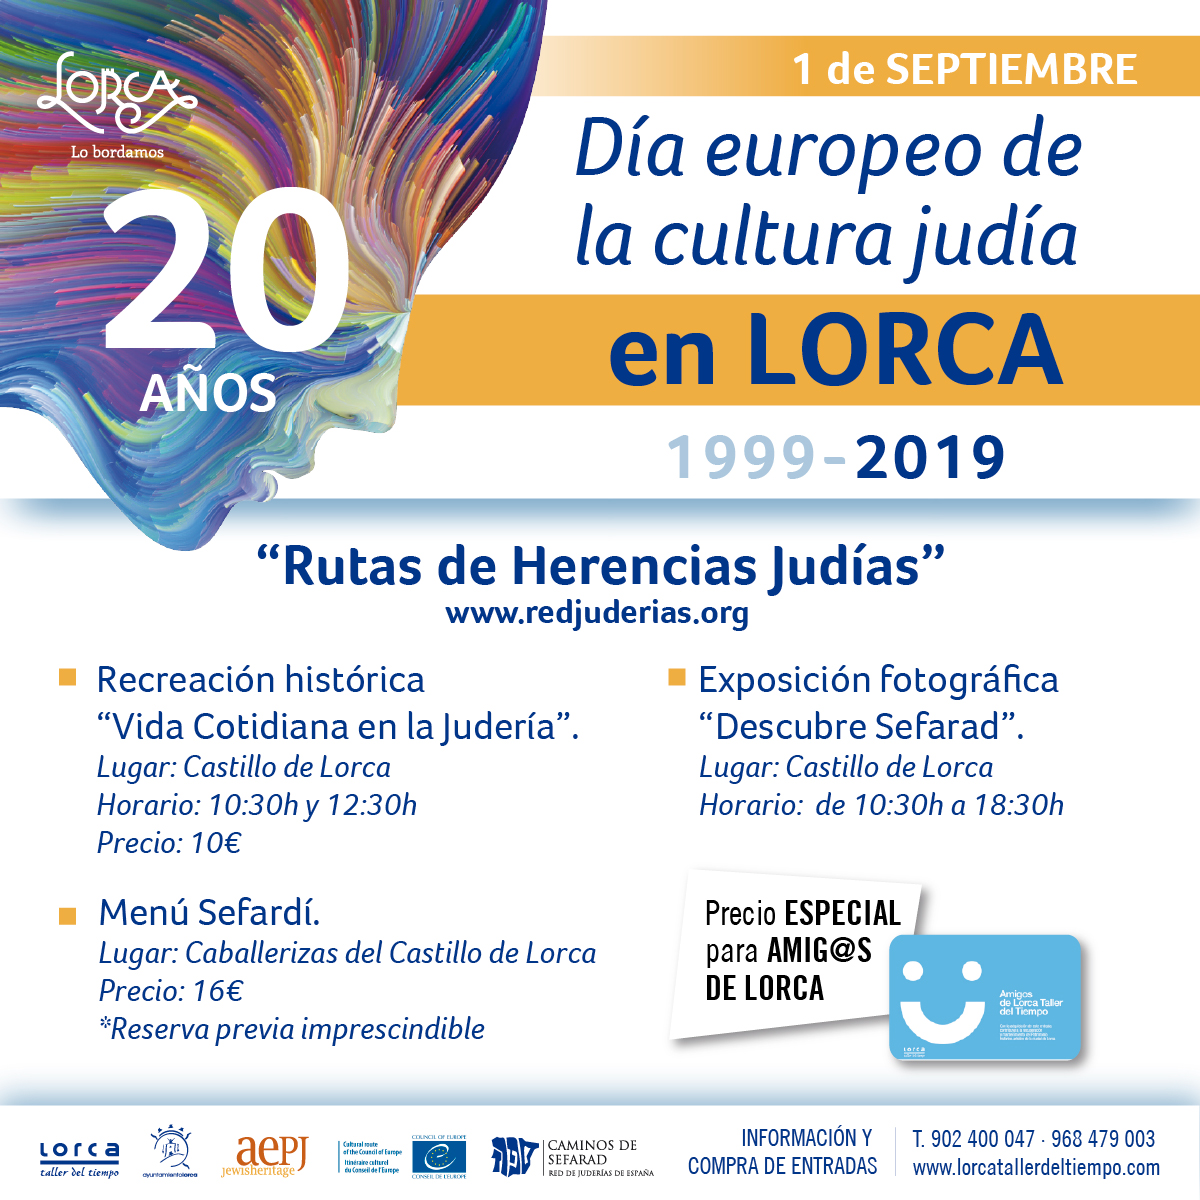 20 Aniversario de la Jornada Europea de la Cultura Judía